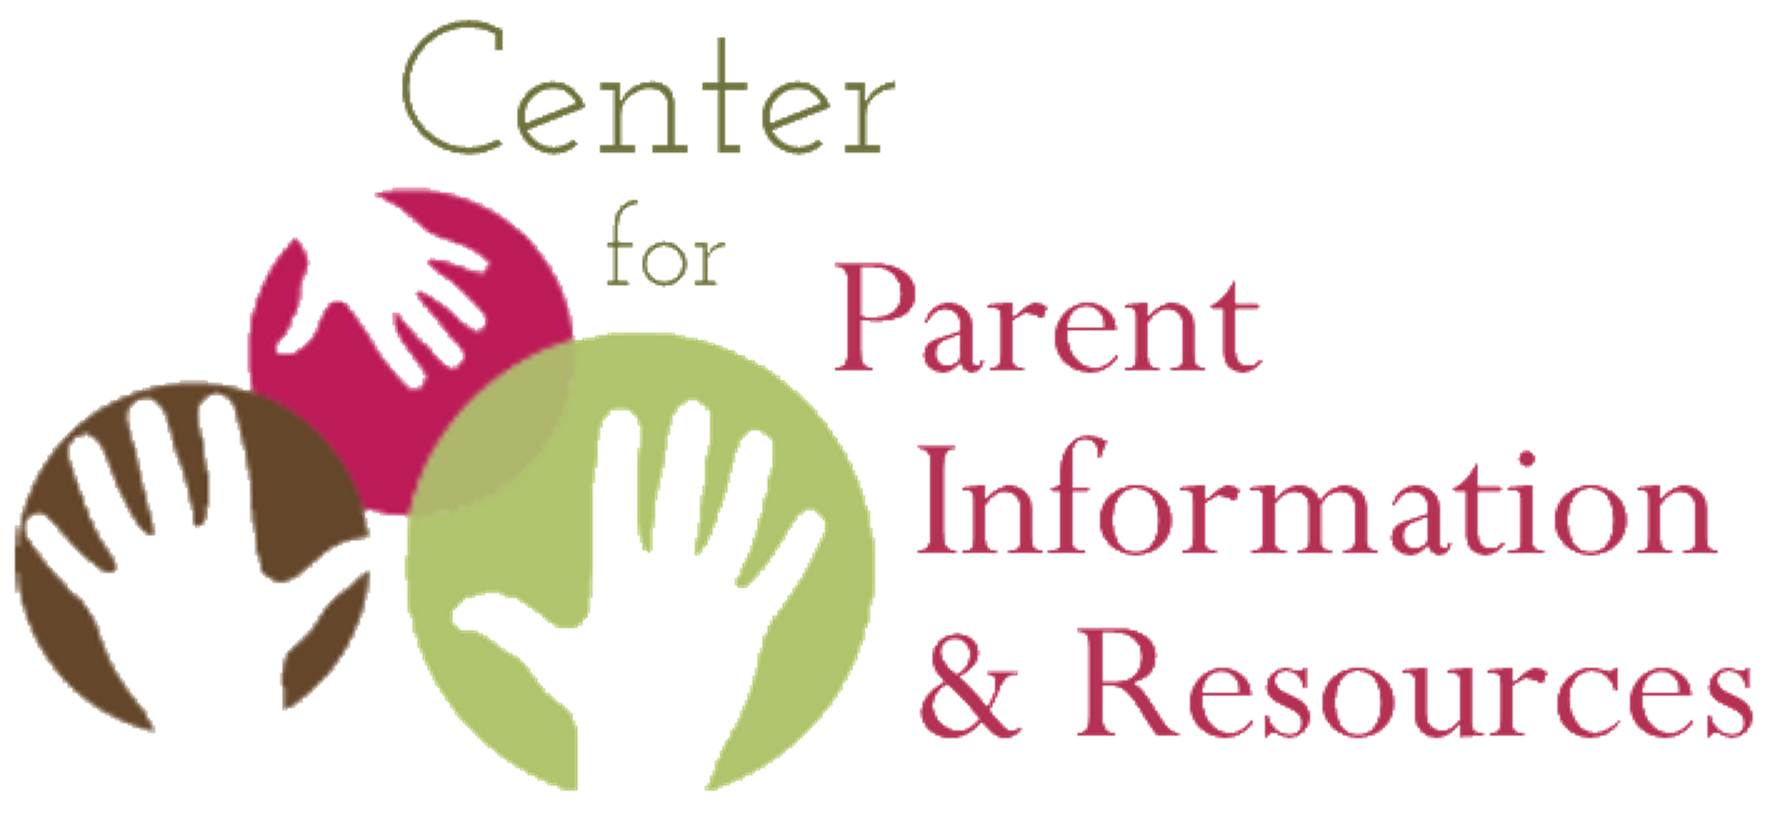 Logotipo del Centro de Información y Recursos para Padres.